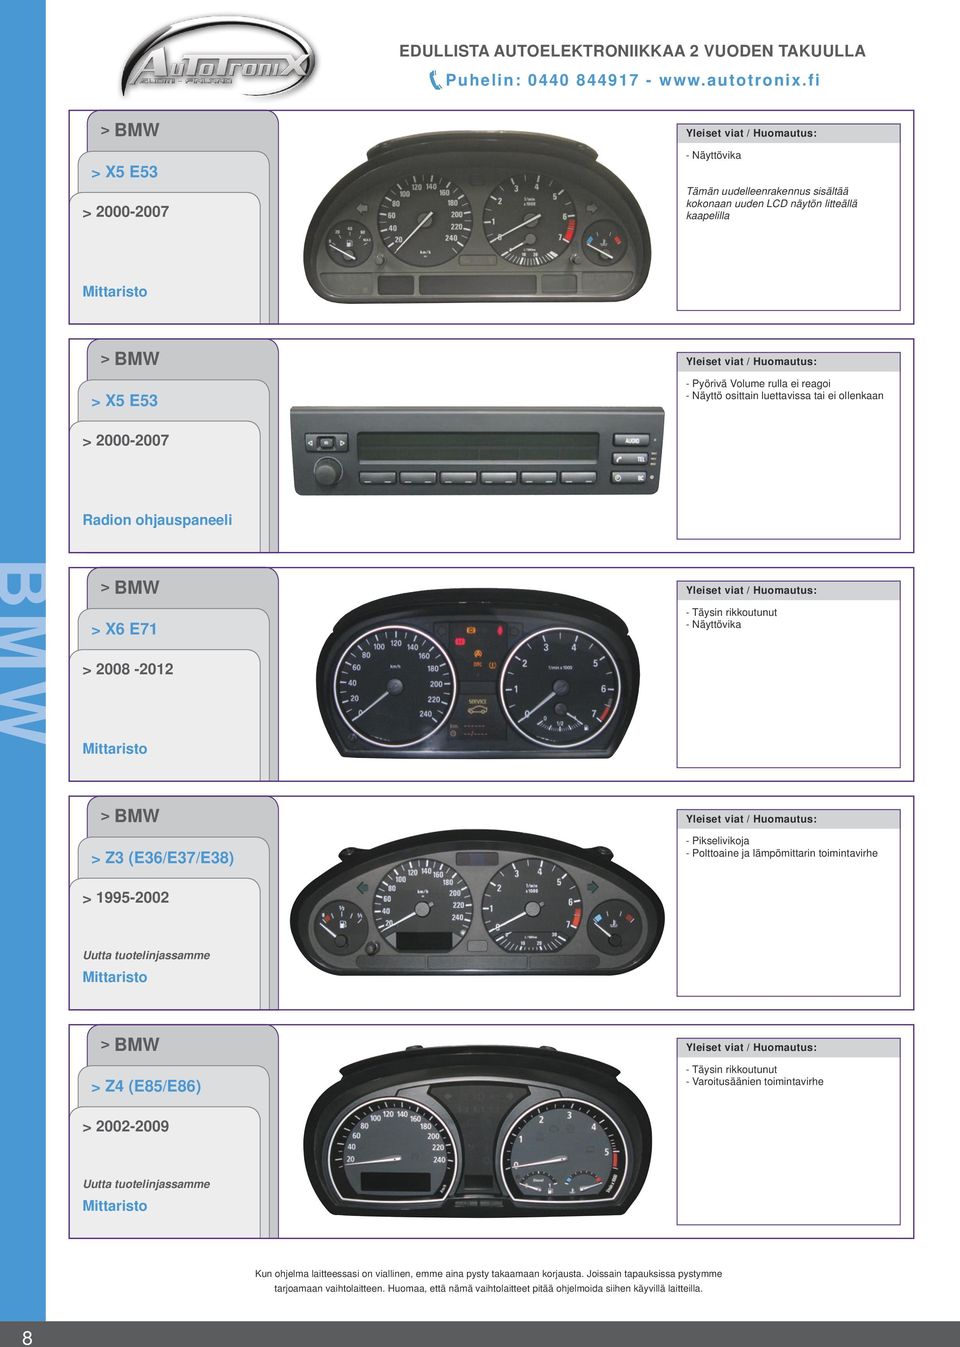 Volume rulla ei reagoi - Näyttö osittain luettavissa tai ei ollenkaan 2000-2007 Radion ohjauspaneeli BMW X6 E71 - Täysin